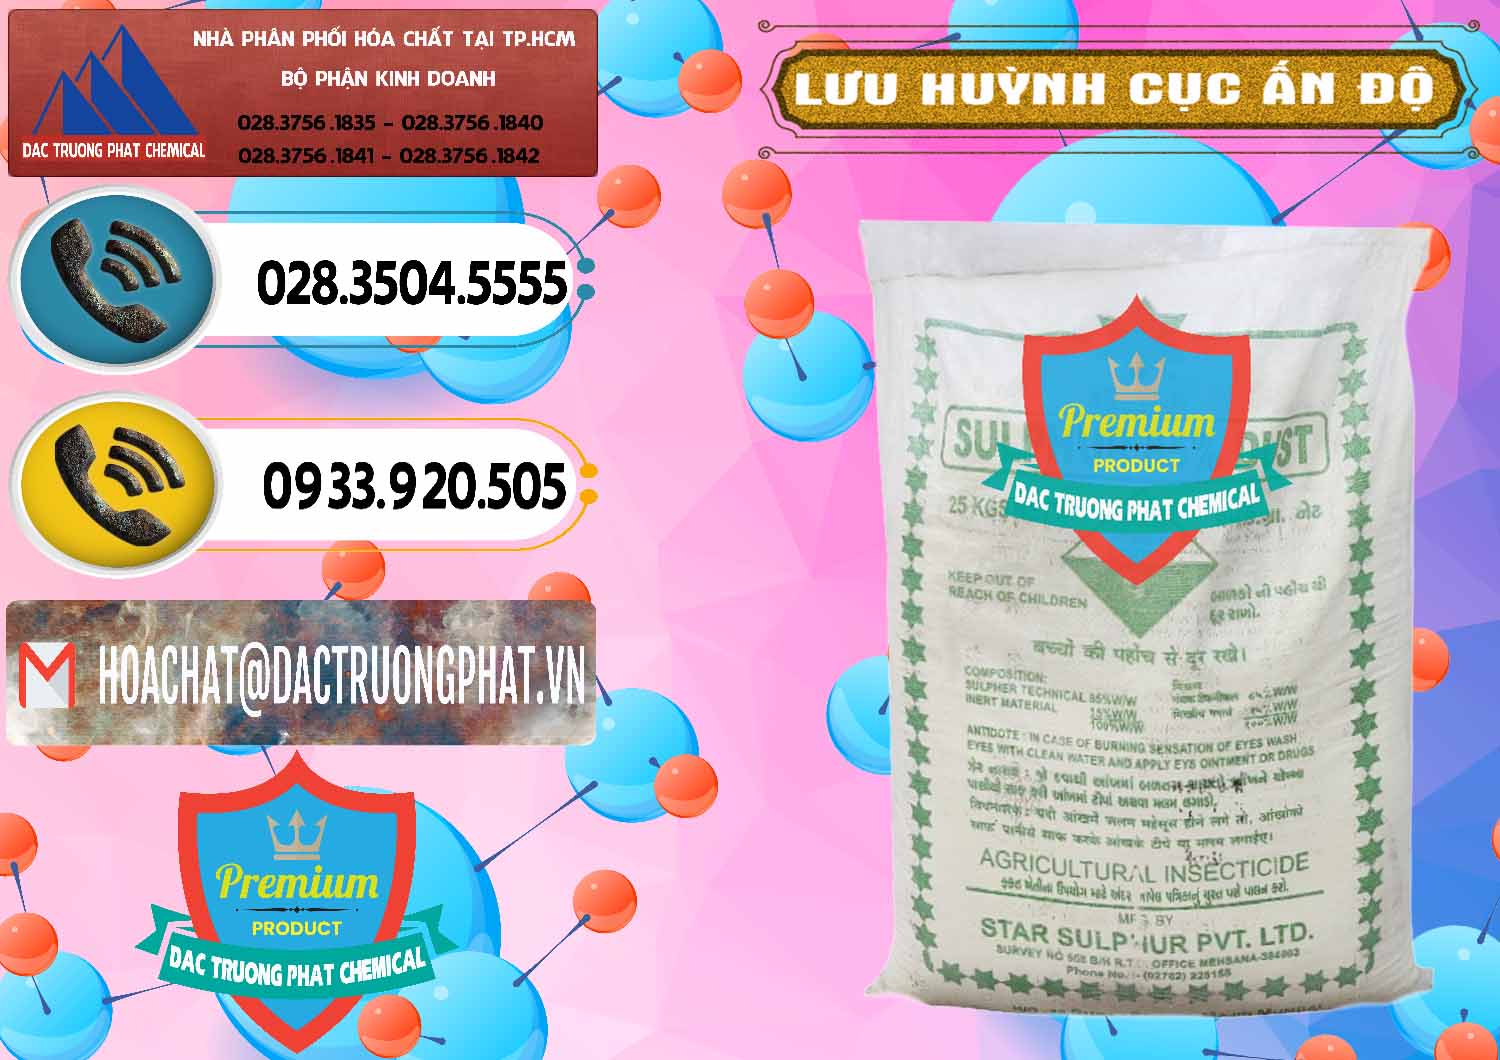 Cty chuyên cung cấp - bán Lưu huỳnh Cục - Sulfur Ấn Độ India - 0348 - Nơi bán và phân phối hóa chất tại TP.HCM - hoachatdetnhuom.vn